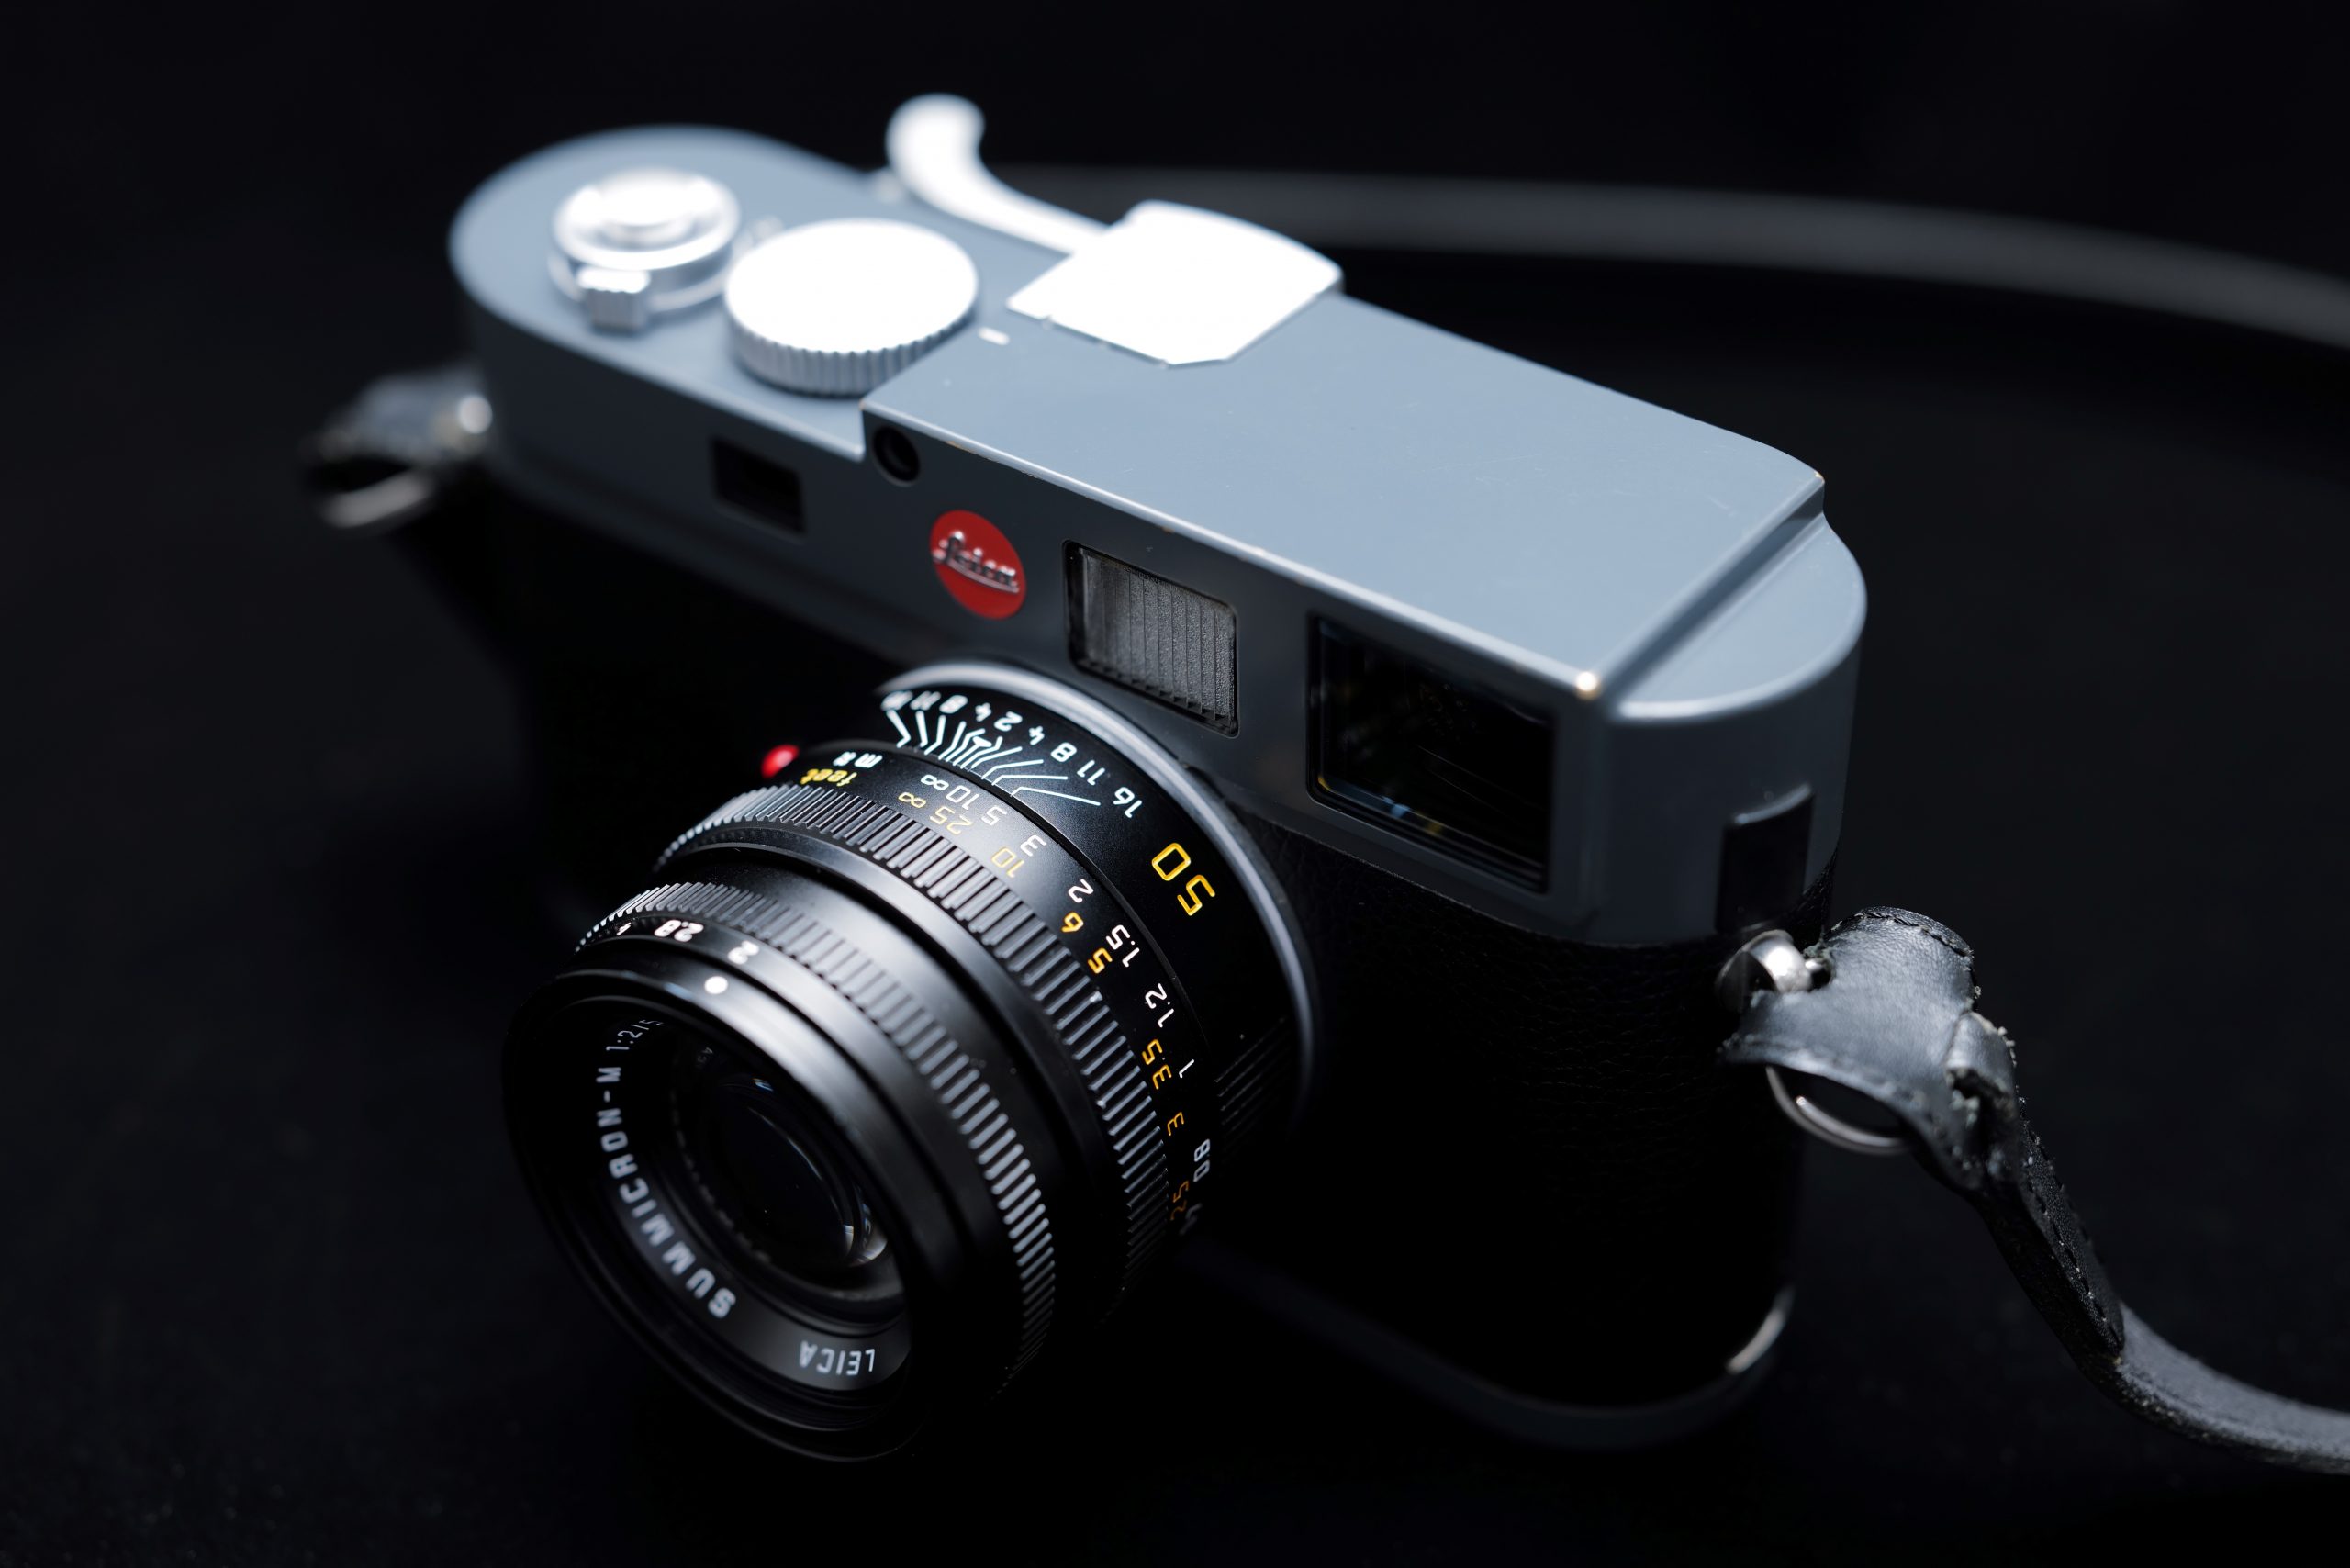 Leica】365日後にレンズを買うスタッフの冒険記 第3話「ズミクロン 